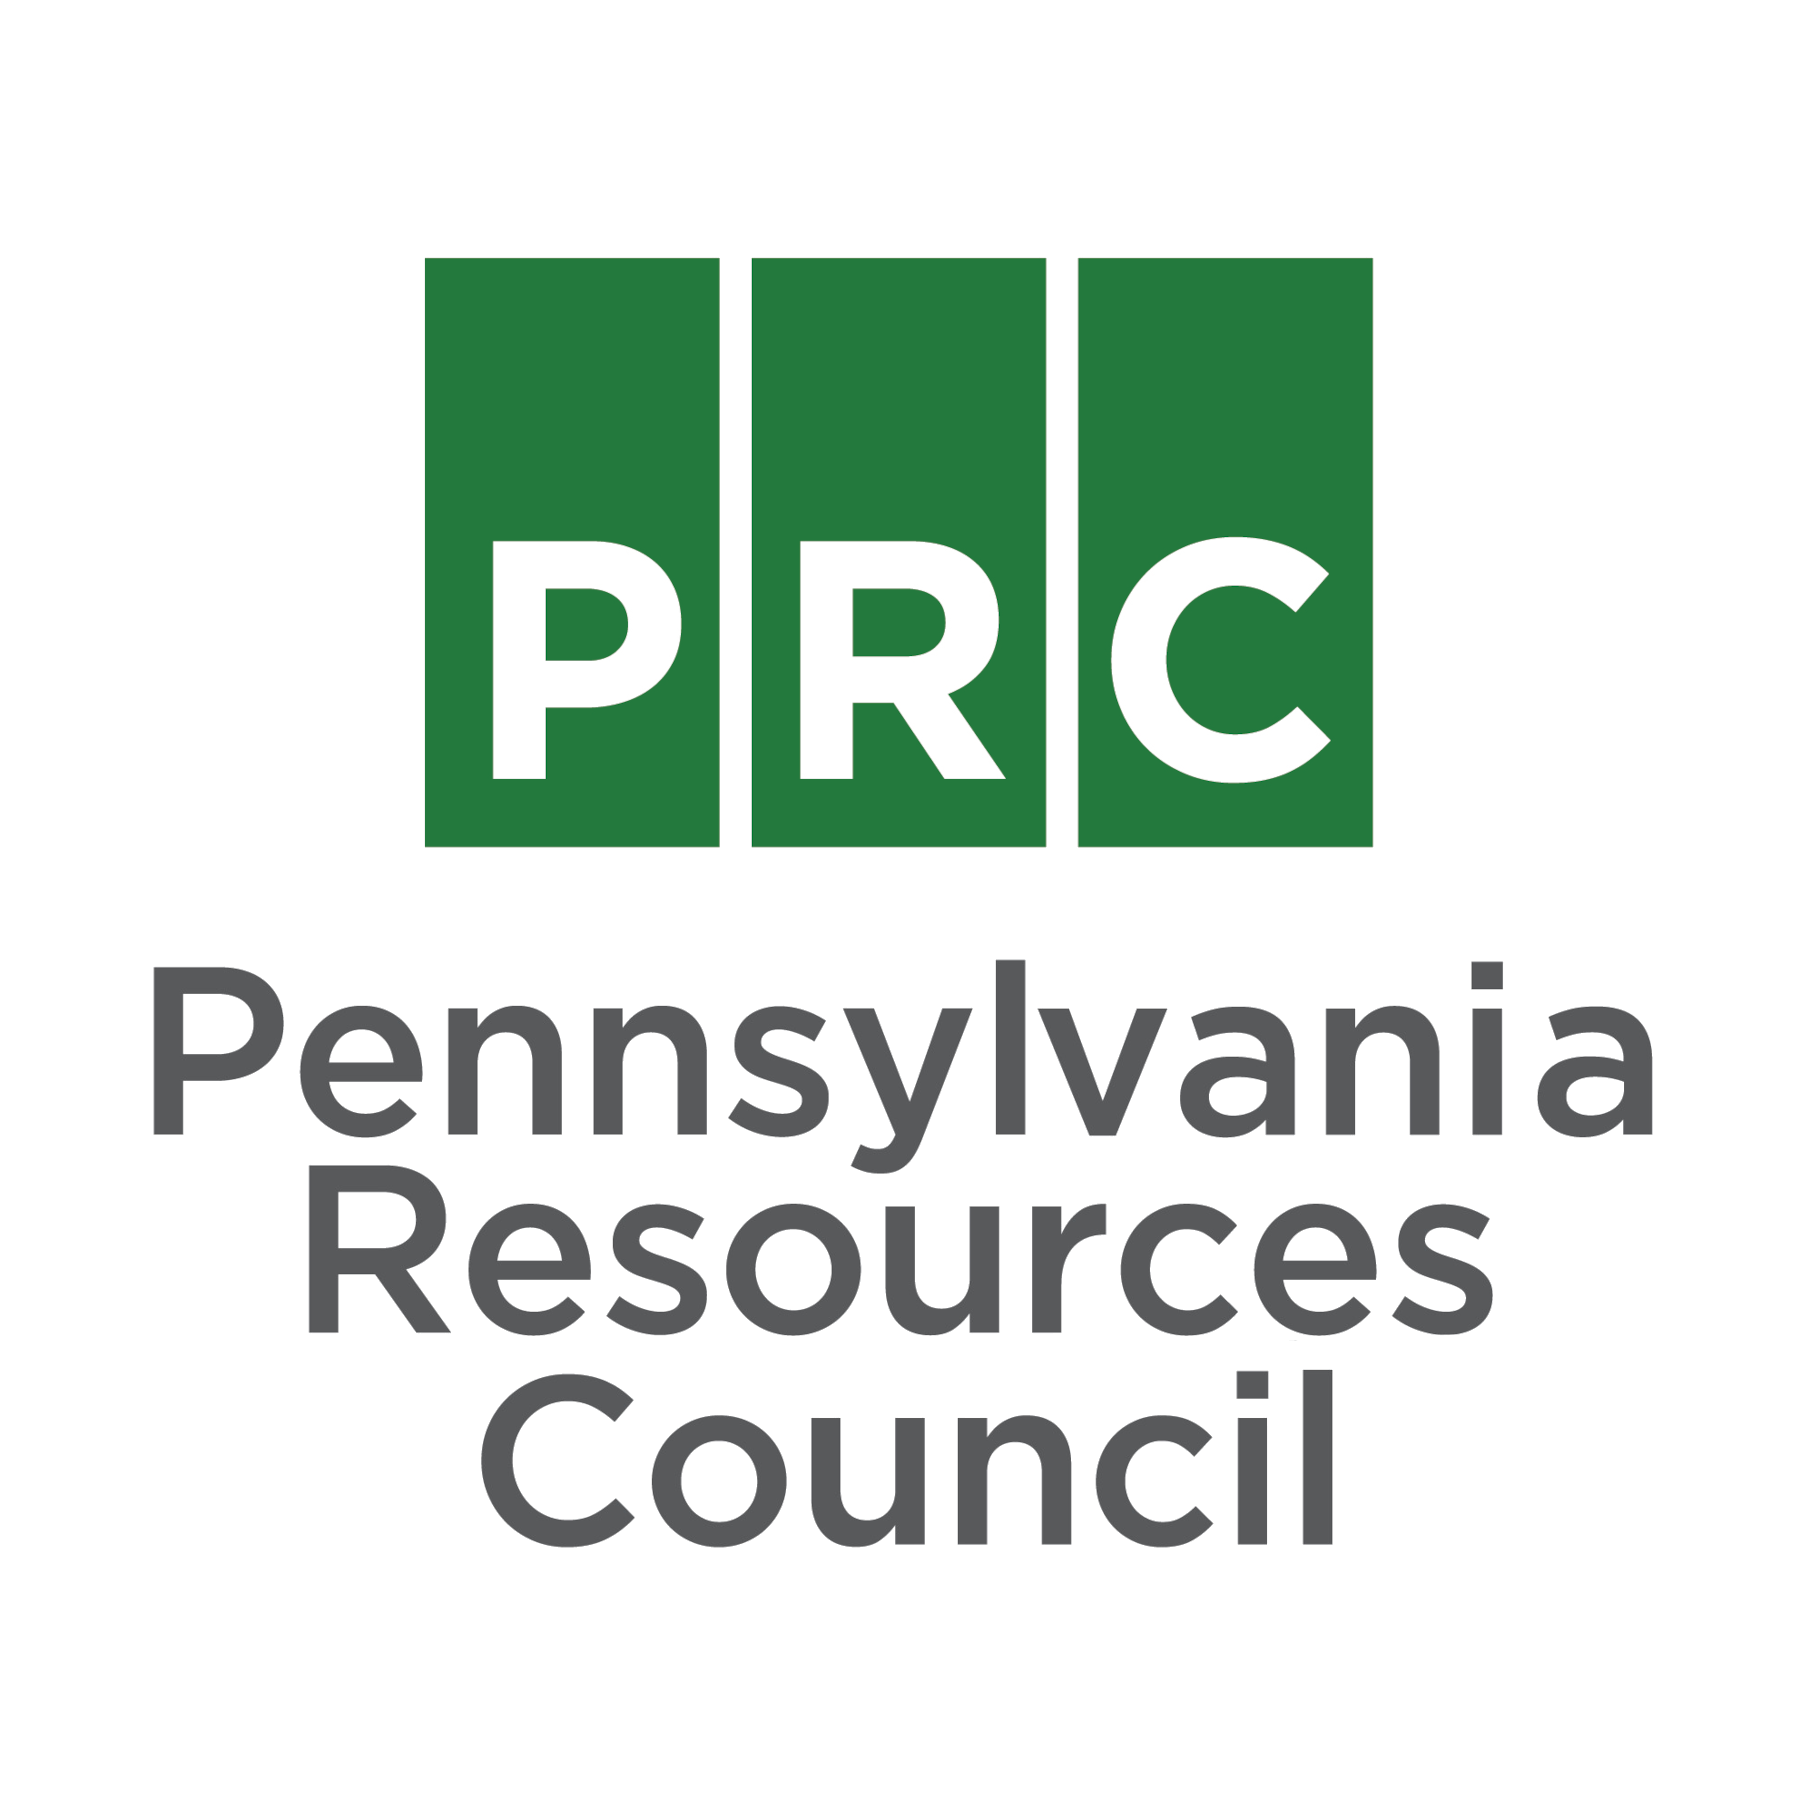 Pennsylvania Resources Council logo